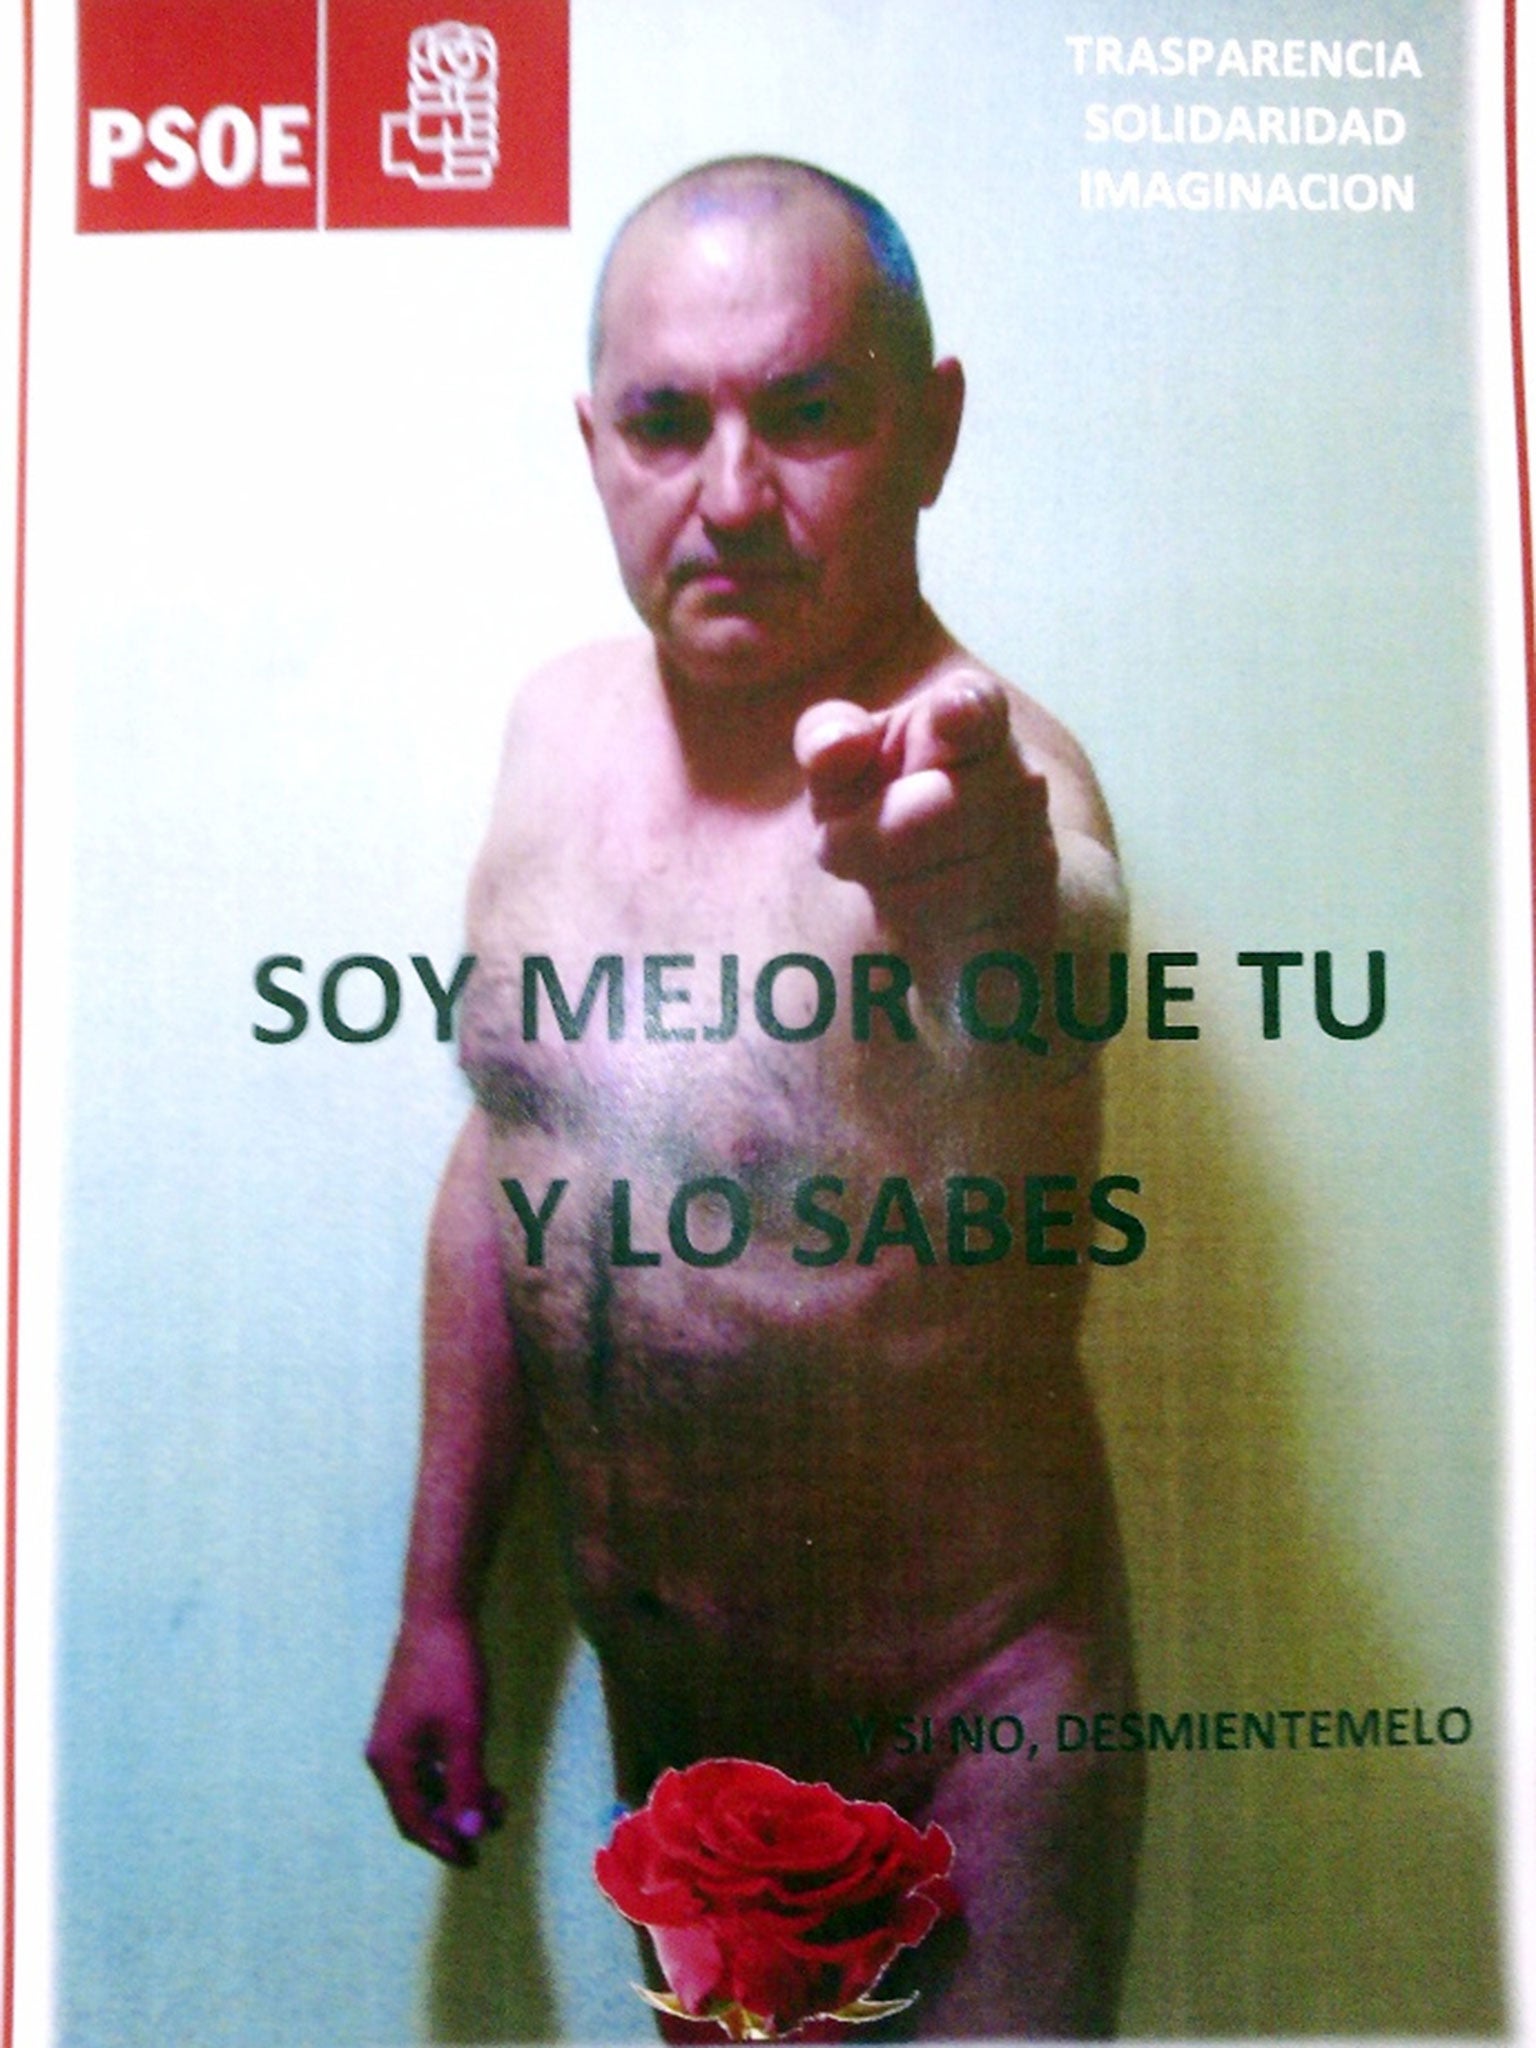 Spanish politician Luis Alberto Nicol·s strips for a poster campaign